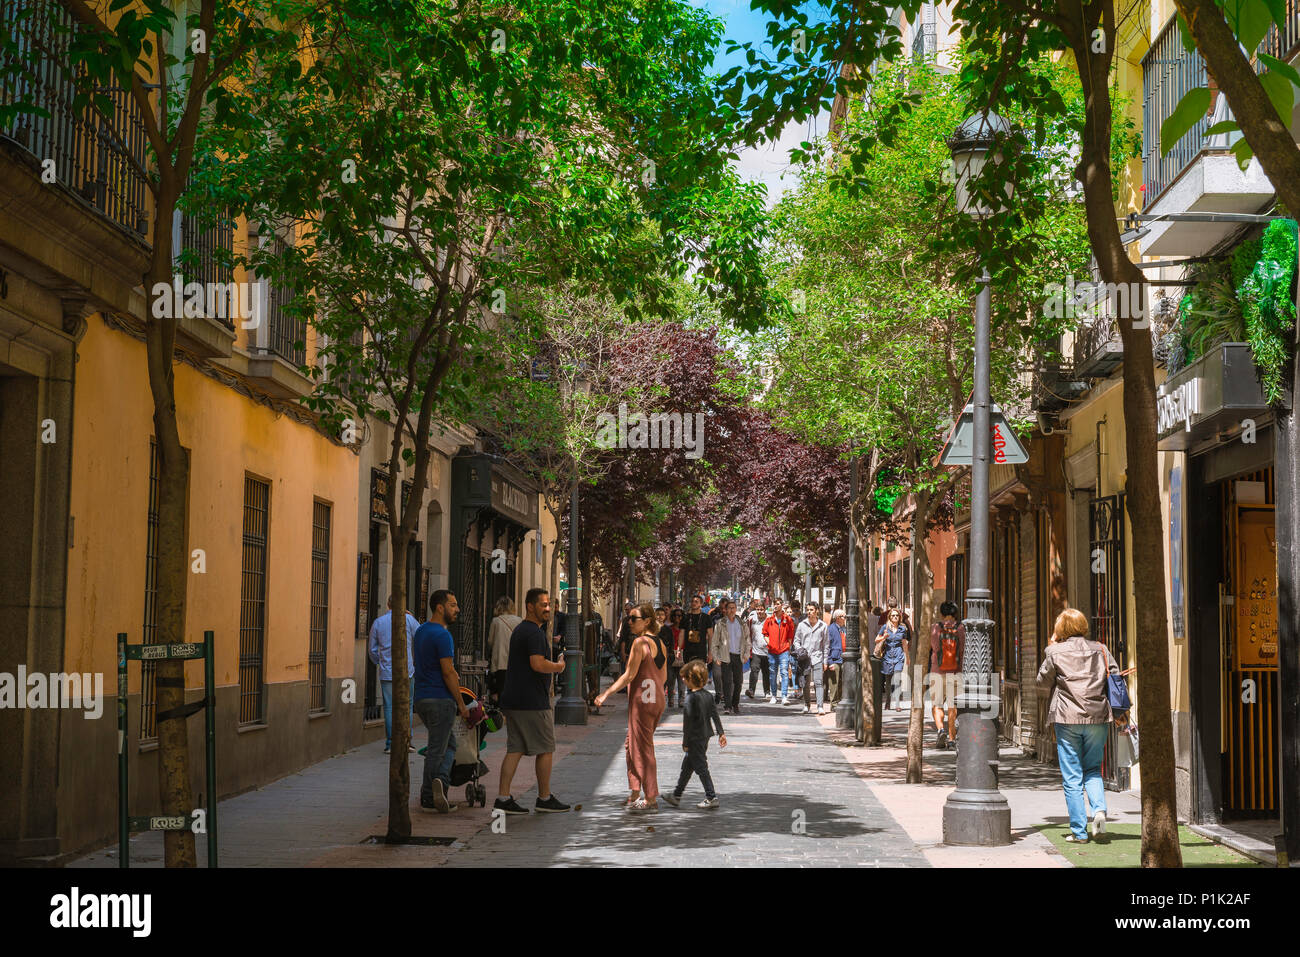 Rue Madrid Huertas, vue en été d'une rue typique bordée d'arbres dans le quartier historique de Huertas à Madrid, Espagne. Banque D'Images